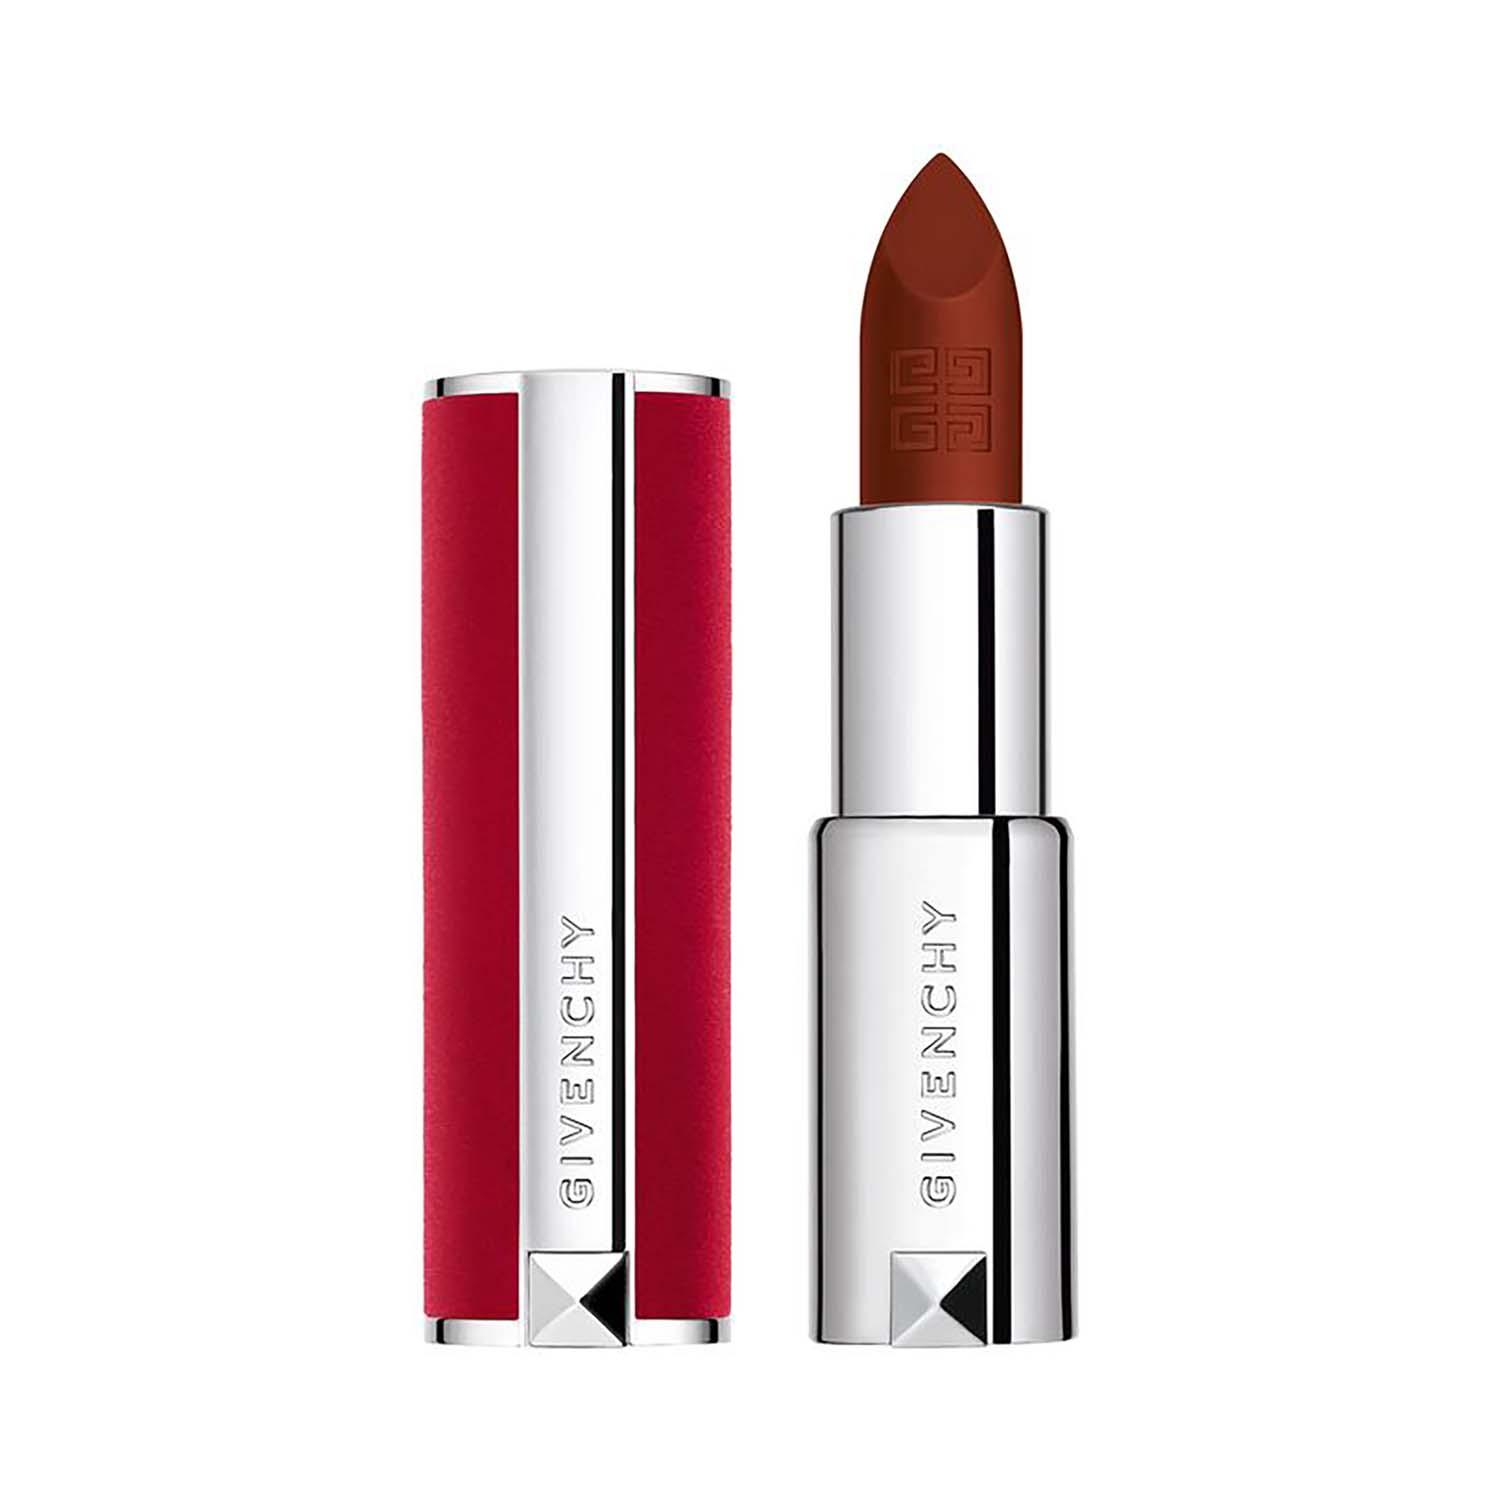 Givenchy | Givenchy Le Rouge Deep Velvet 23 Ext Matte Lipstick - N50 Brun Acajou (3.4 g)